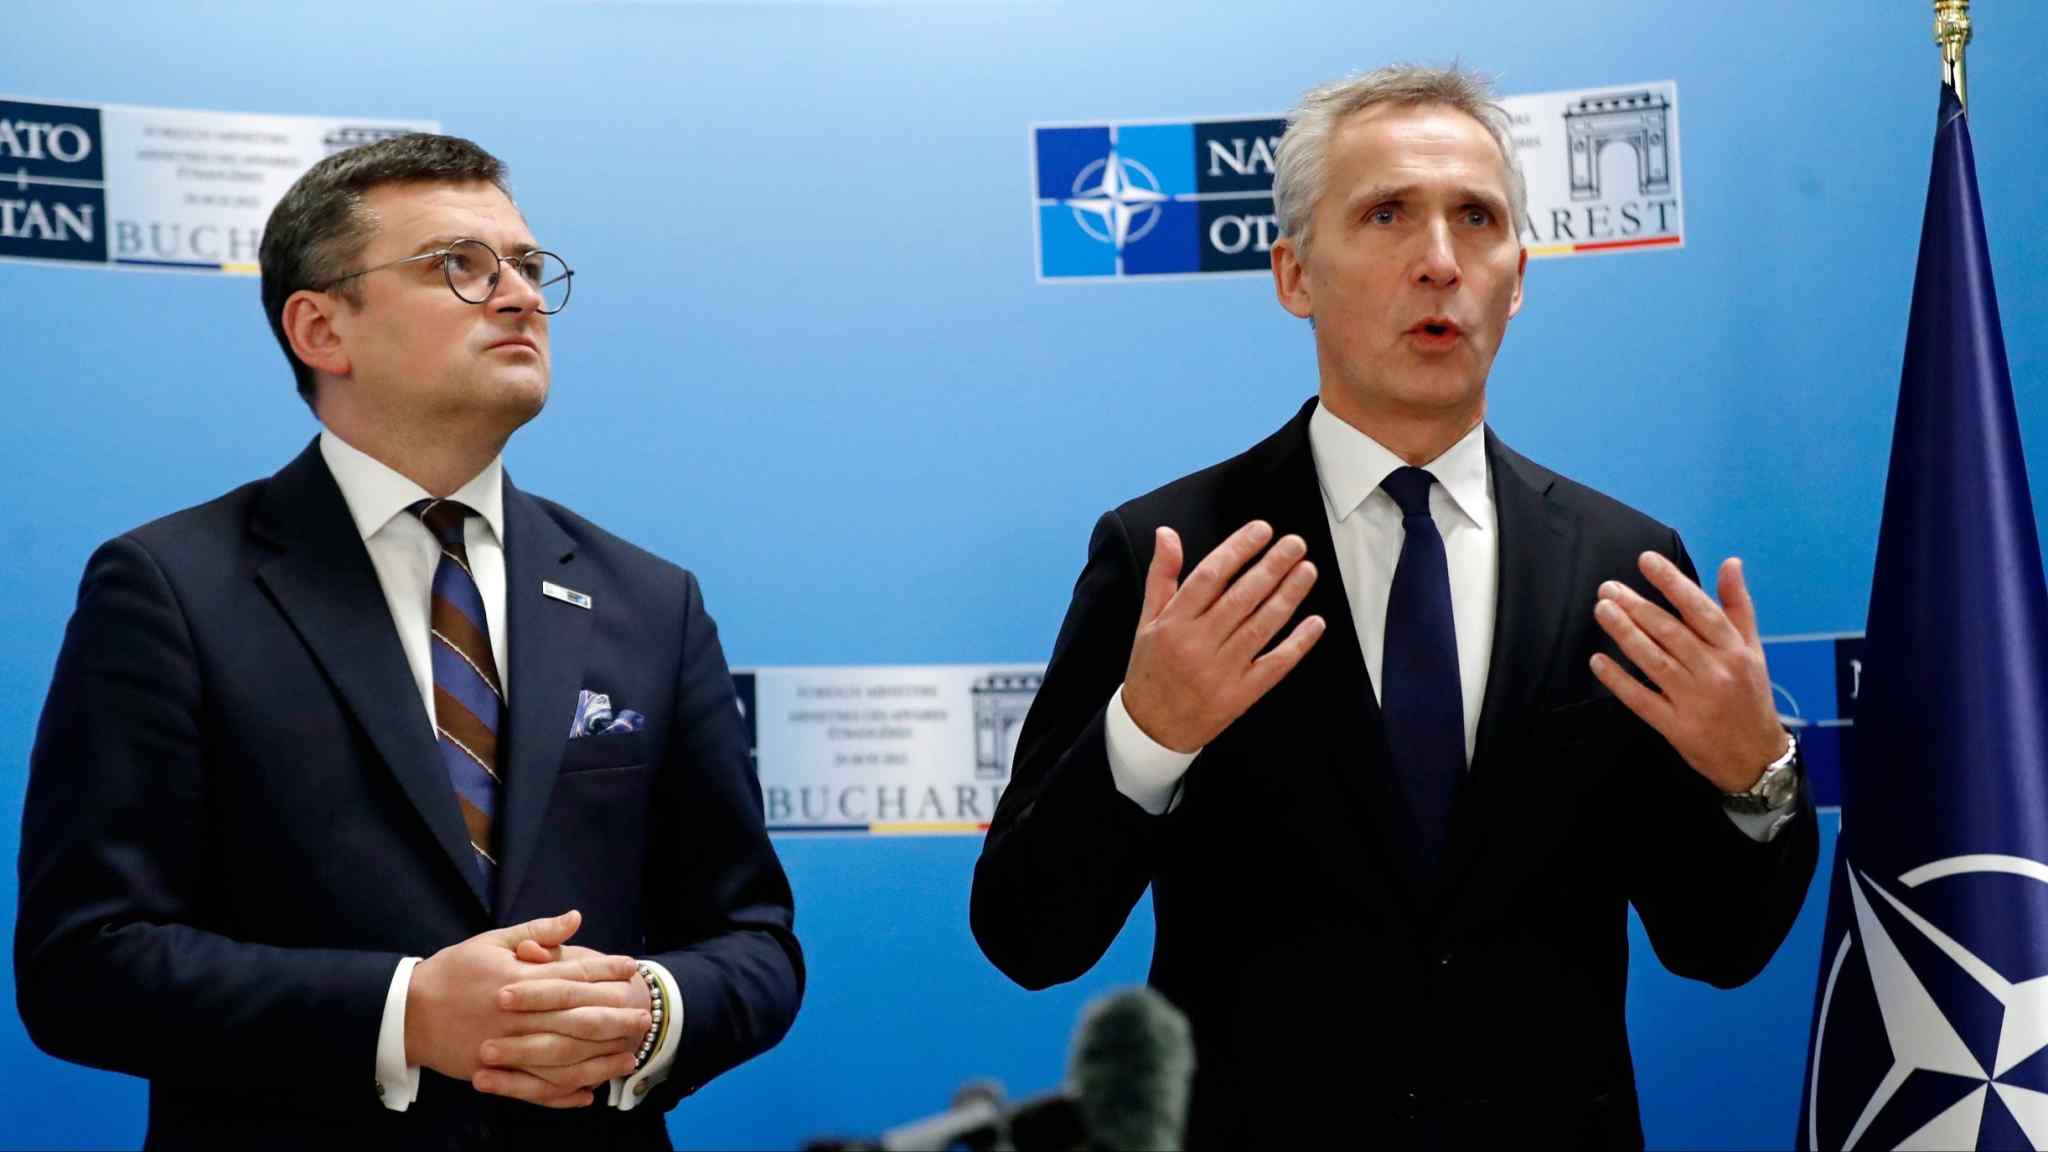 Nato restates pledge to make Ukraine a member